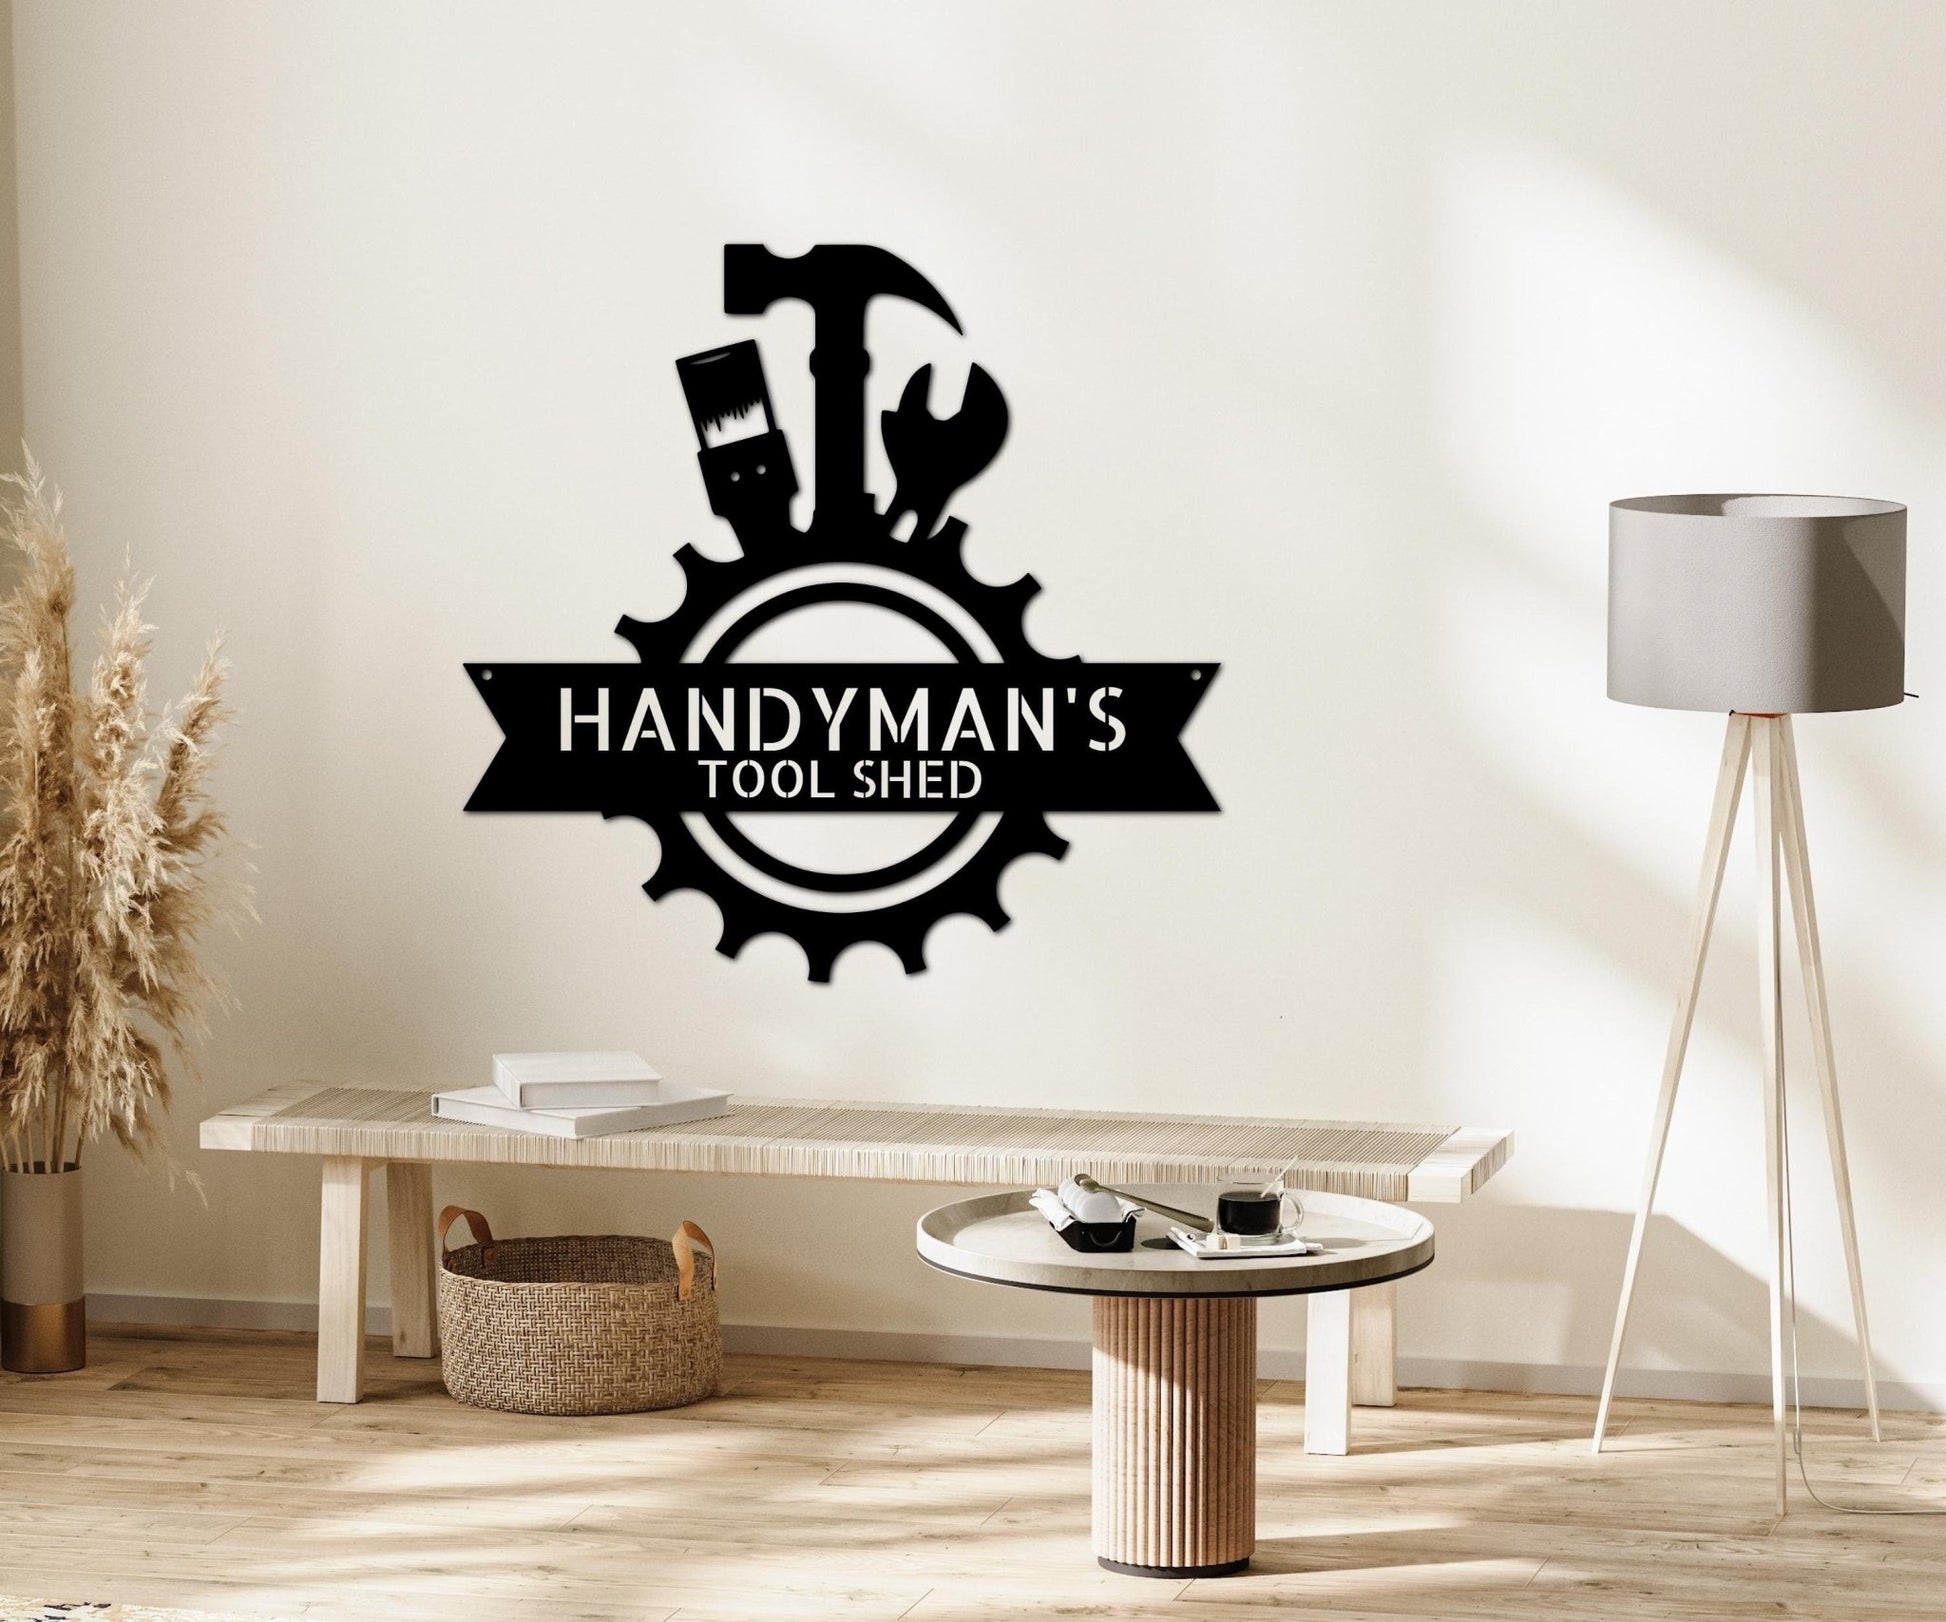 Handyman Shop Mancave Workshop Sign - Garage Metal Wall Art - Gift for Husband - Stylinsoul